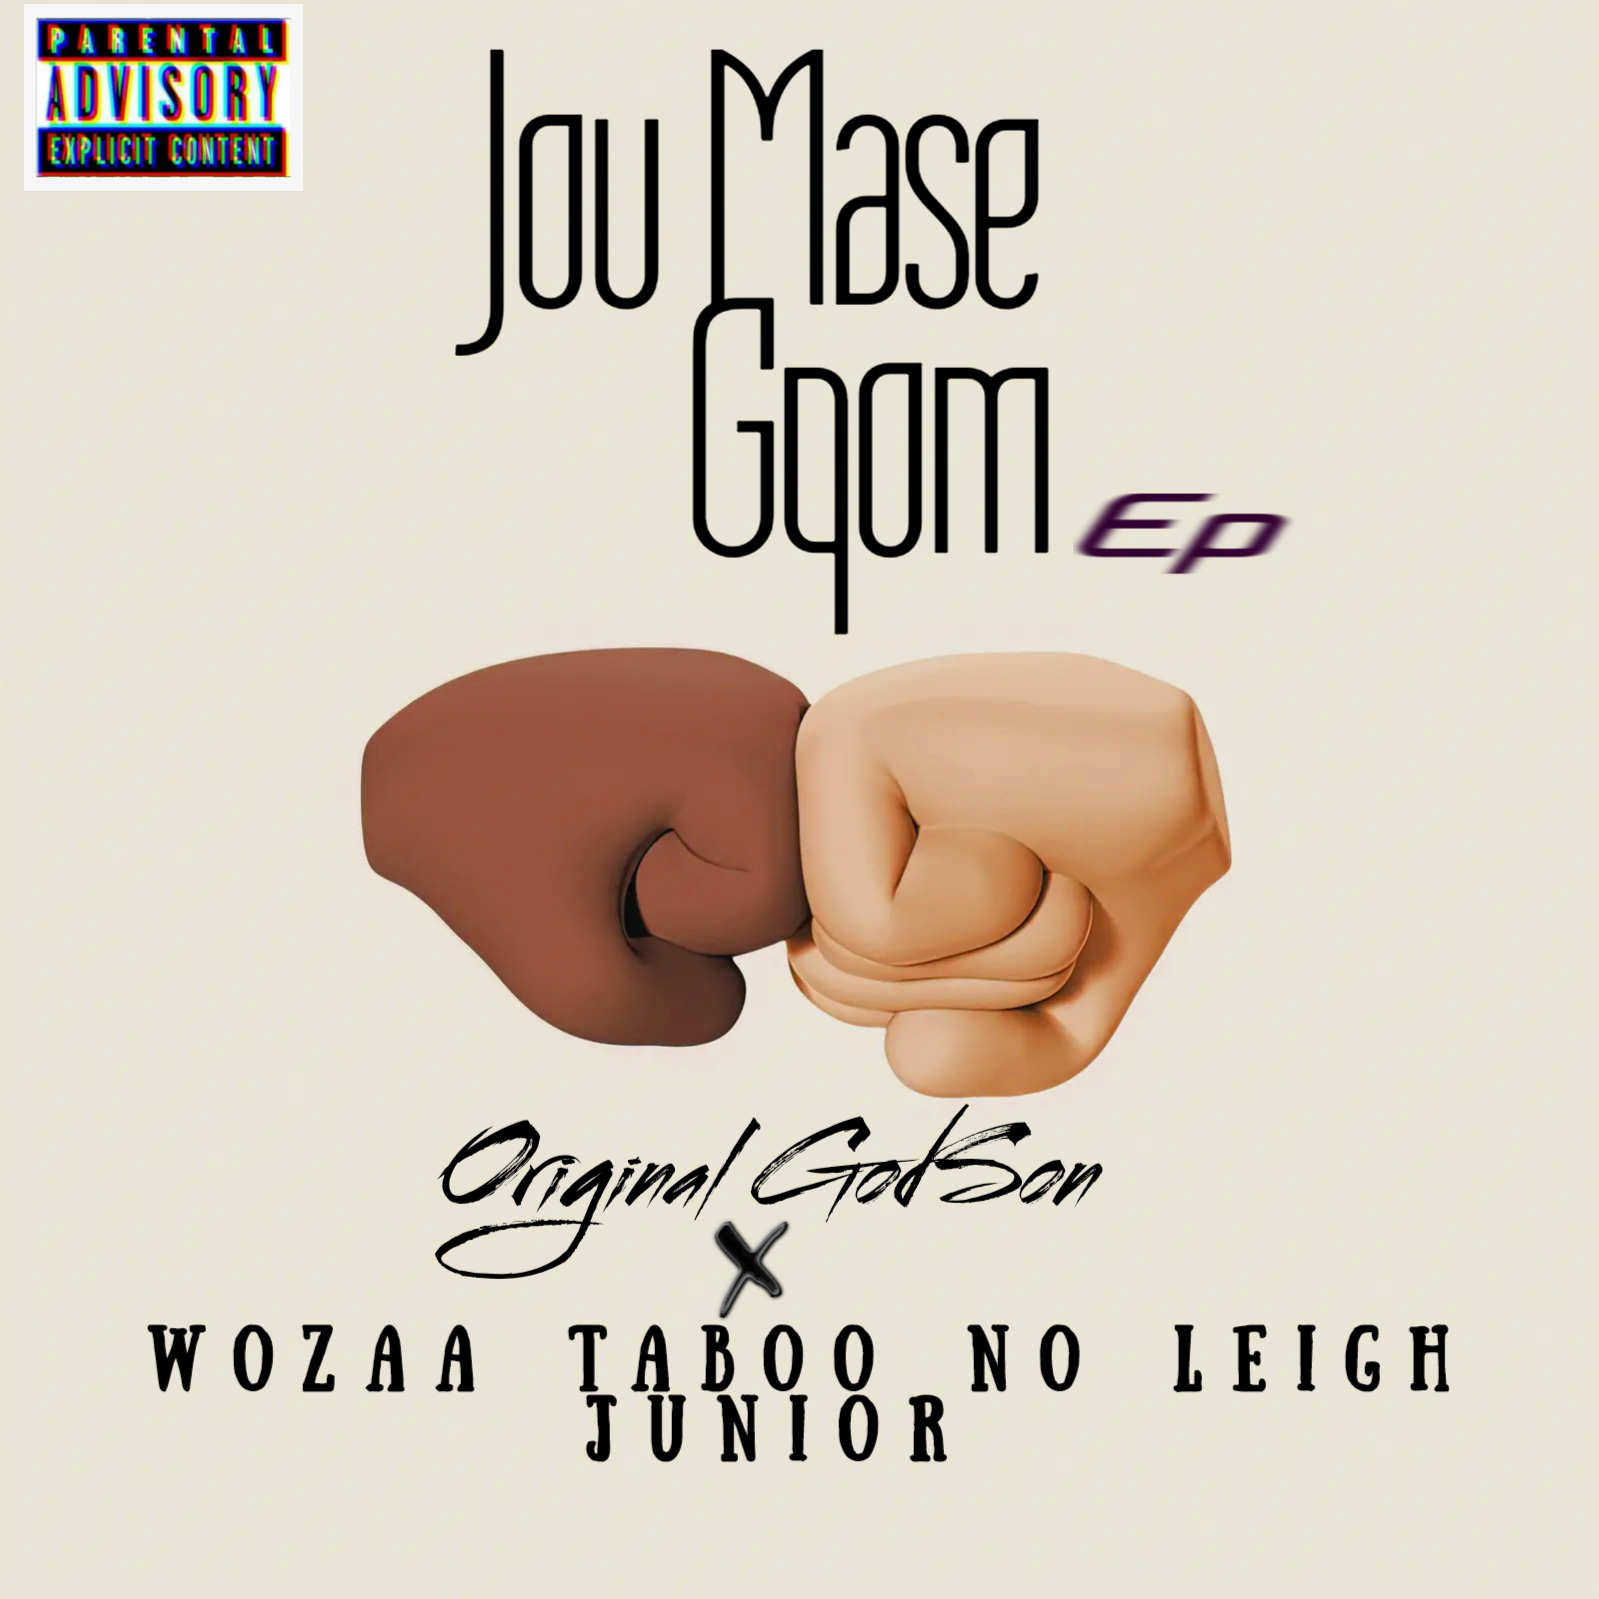 Jou Mase Gqom EP - Original GodSon ft Taboo No Leigh Junior